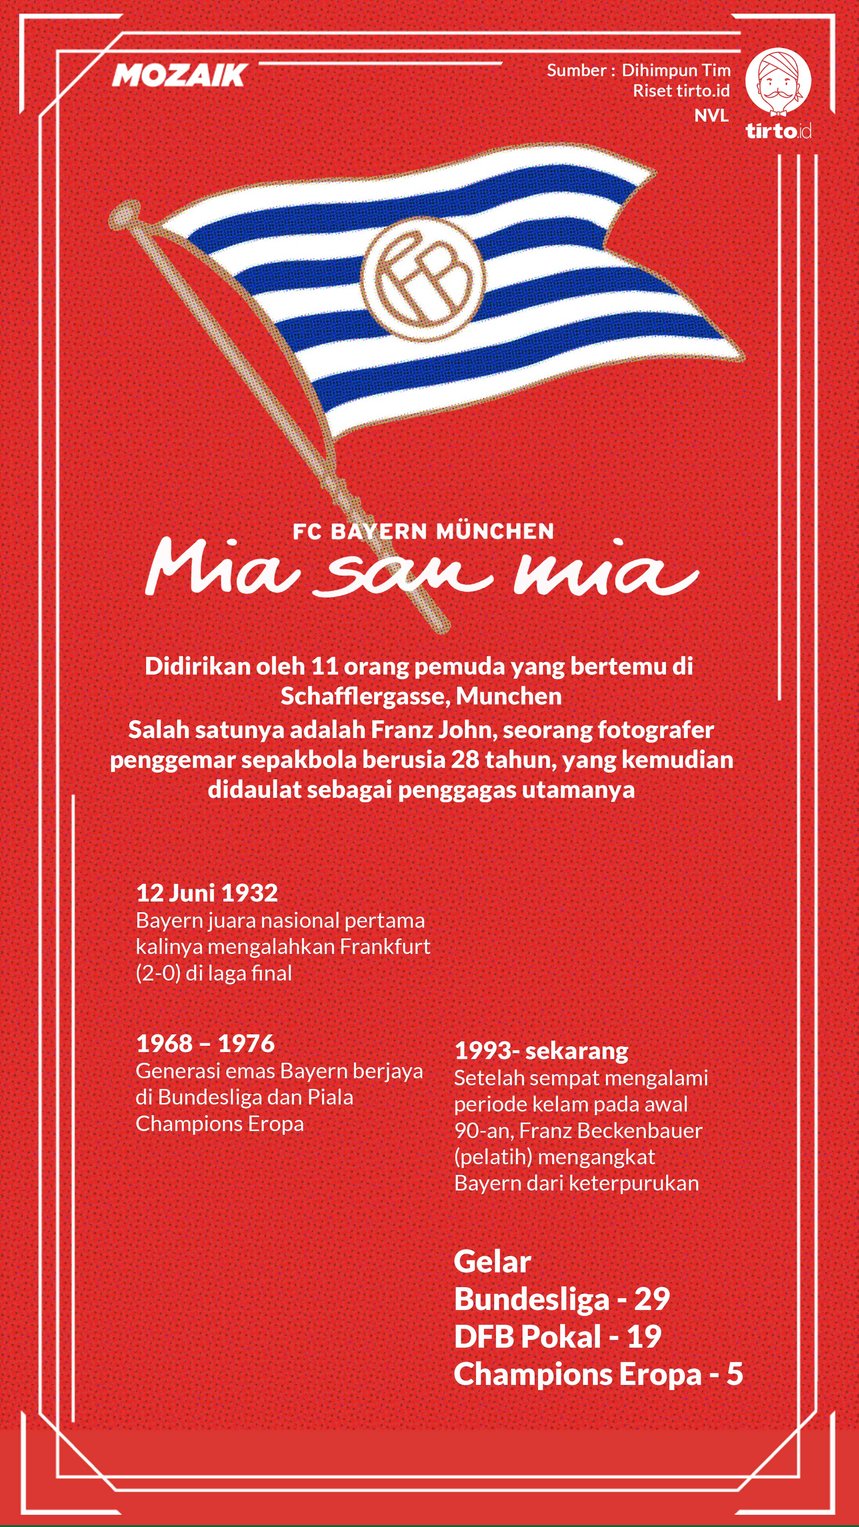 Infografik Mozaik FC Bayern Munchen